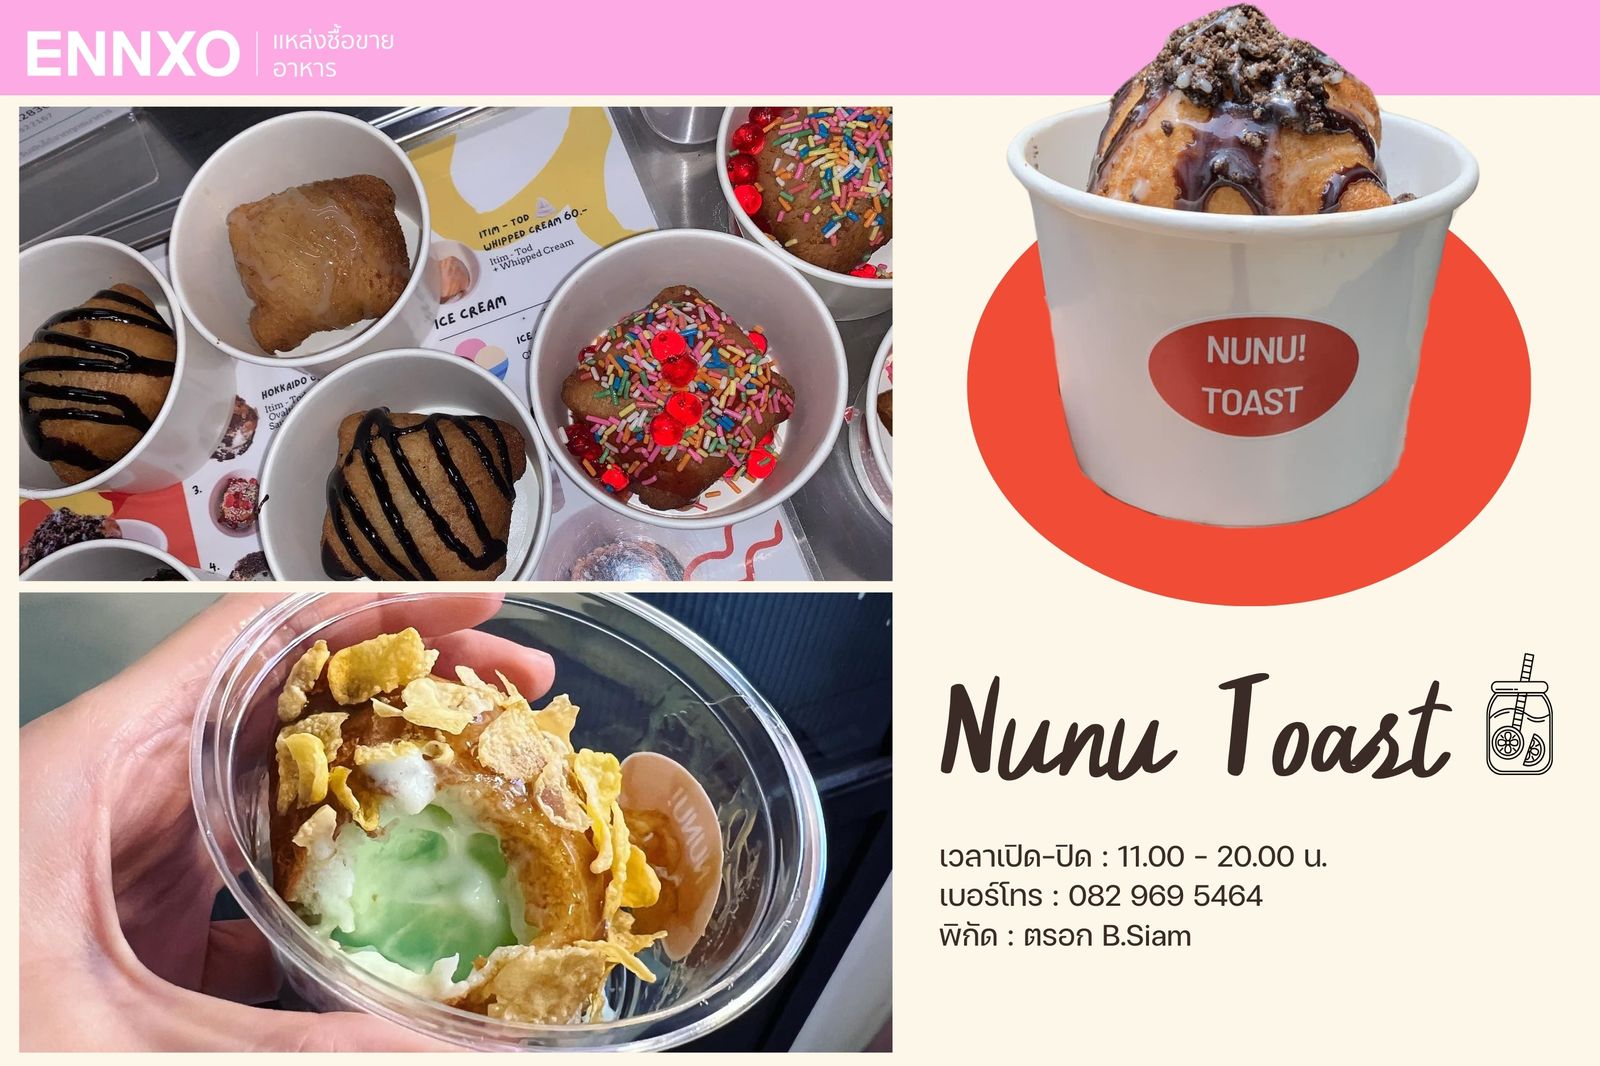 ร้าน Nunu Toast ร้านขนมหวานแถวสยามที่ต้องไปลอง รสชาติอร่อย สีสันสวย